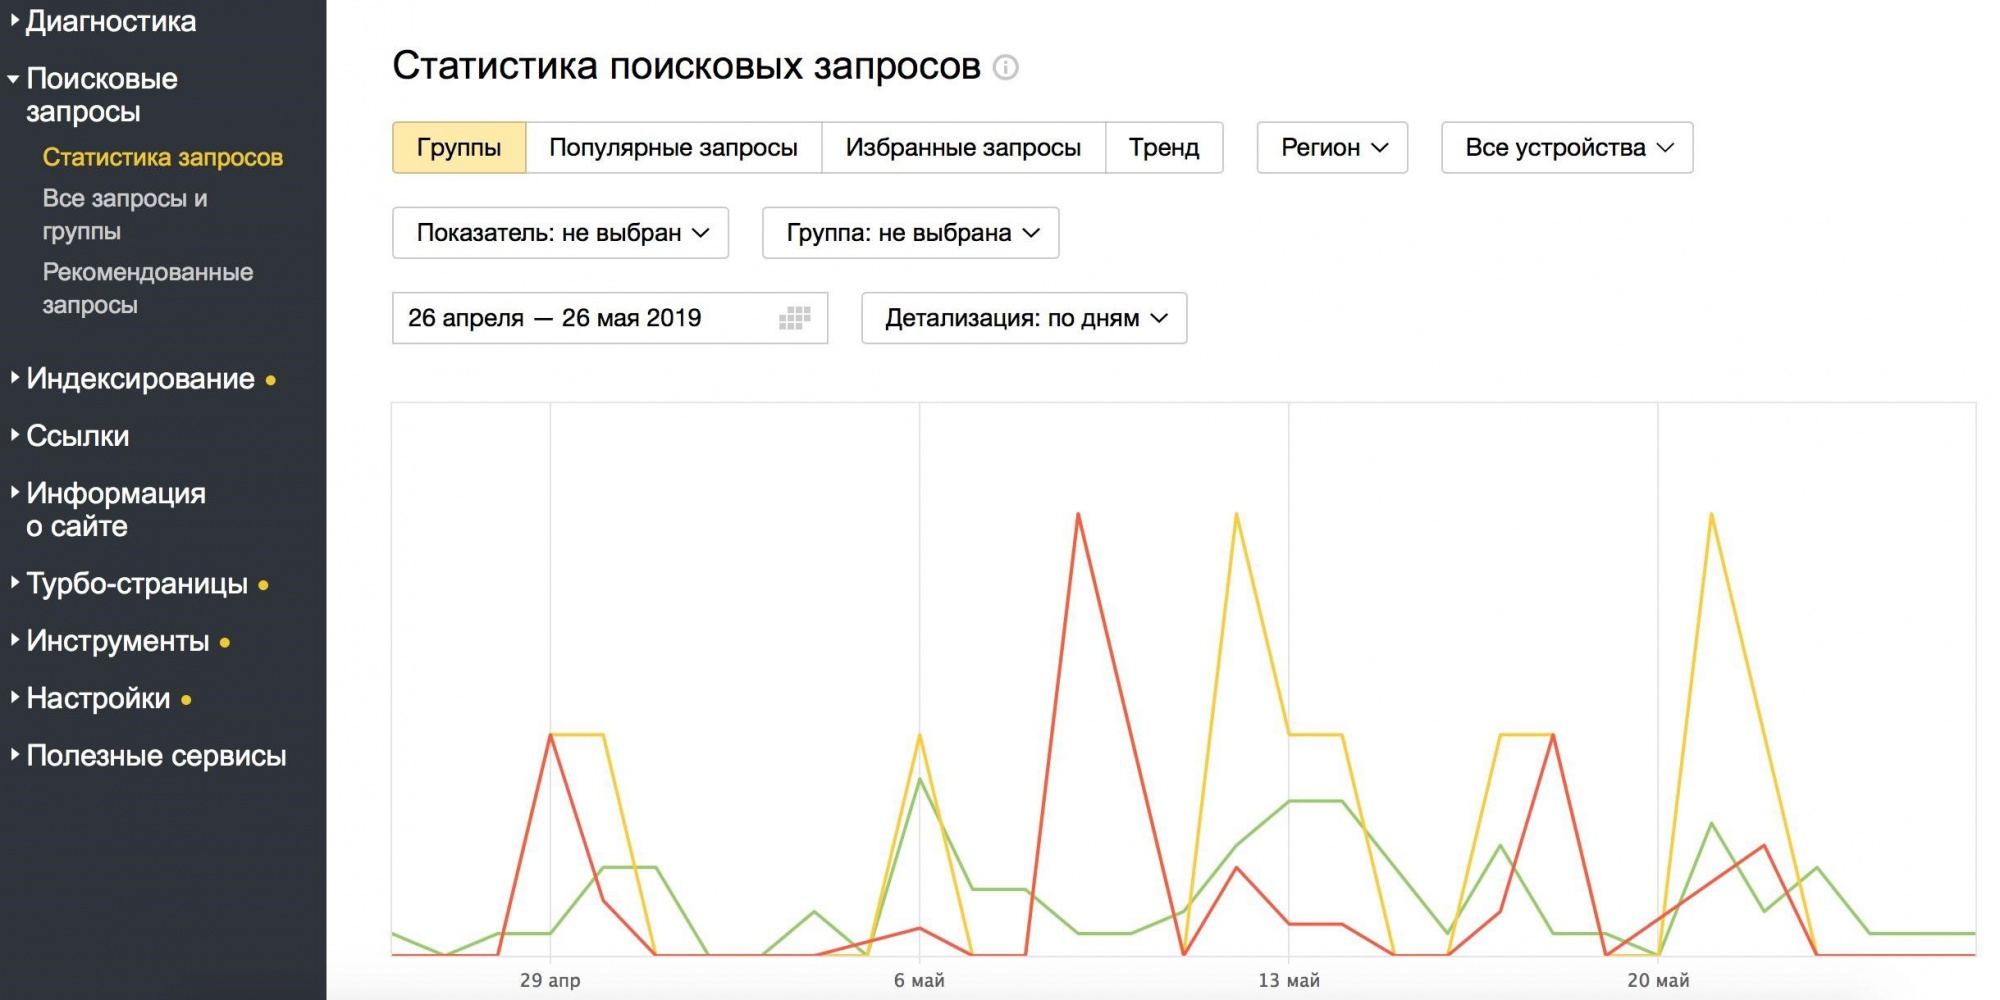 Как узнать статистику поисковых запросов с помощью Яндекс.Метрики